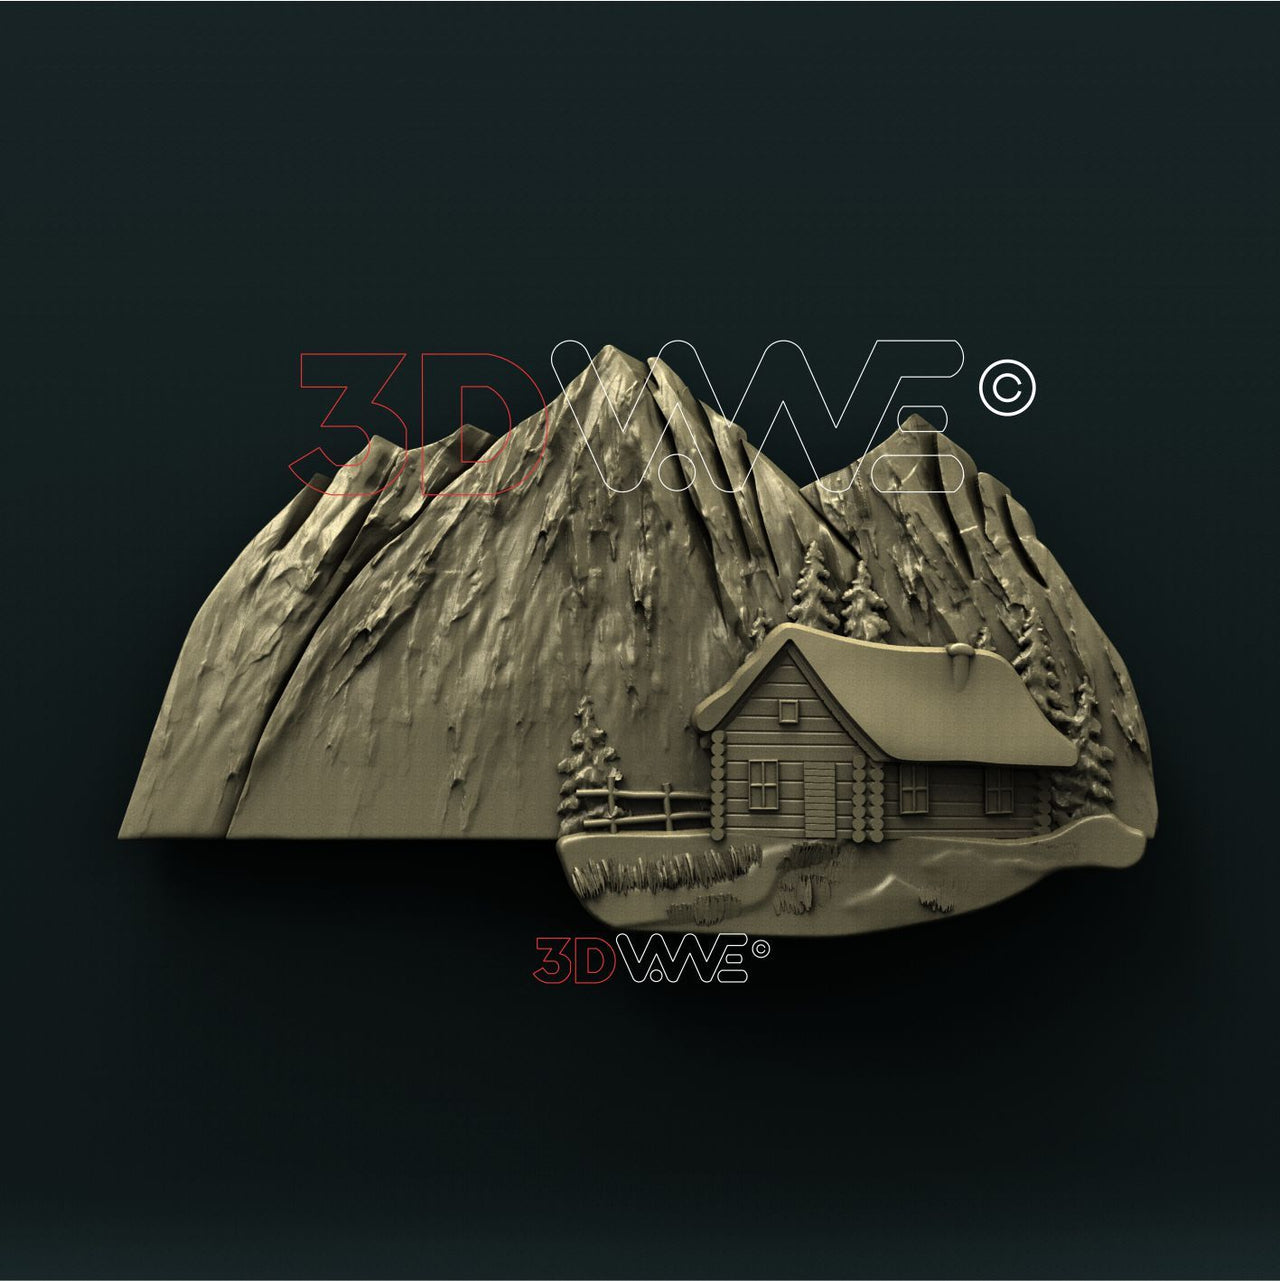 LOG CABIN IN MOUNTAINS 3D STL 3DWave